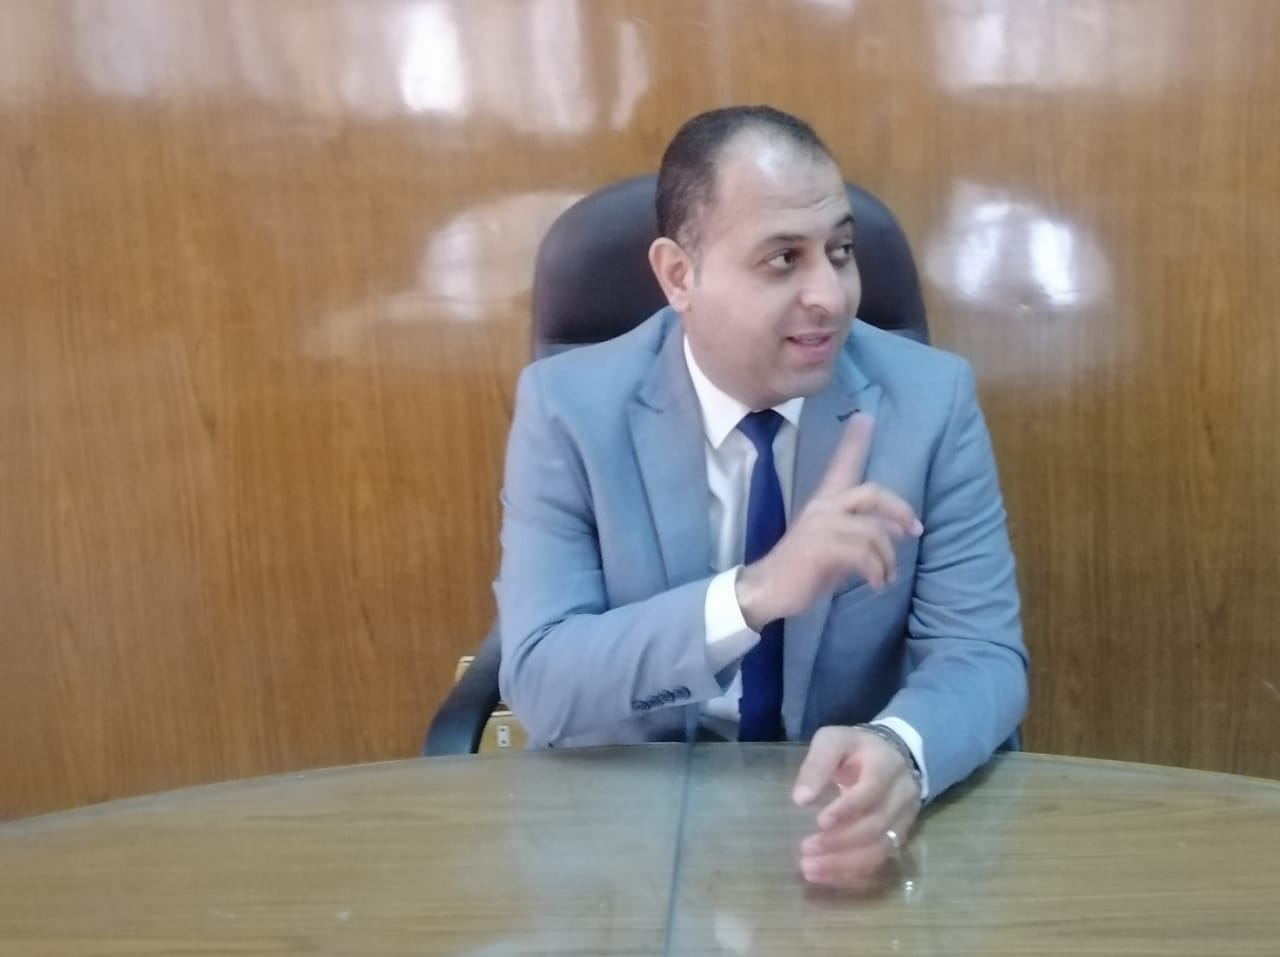 د. أحمد جمعة عبد الغني حسن: انضمام مصر لـ